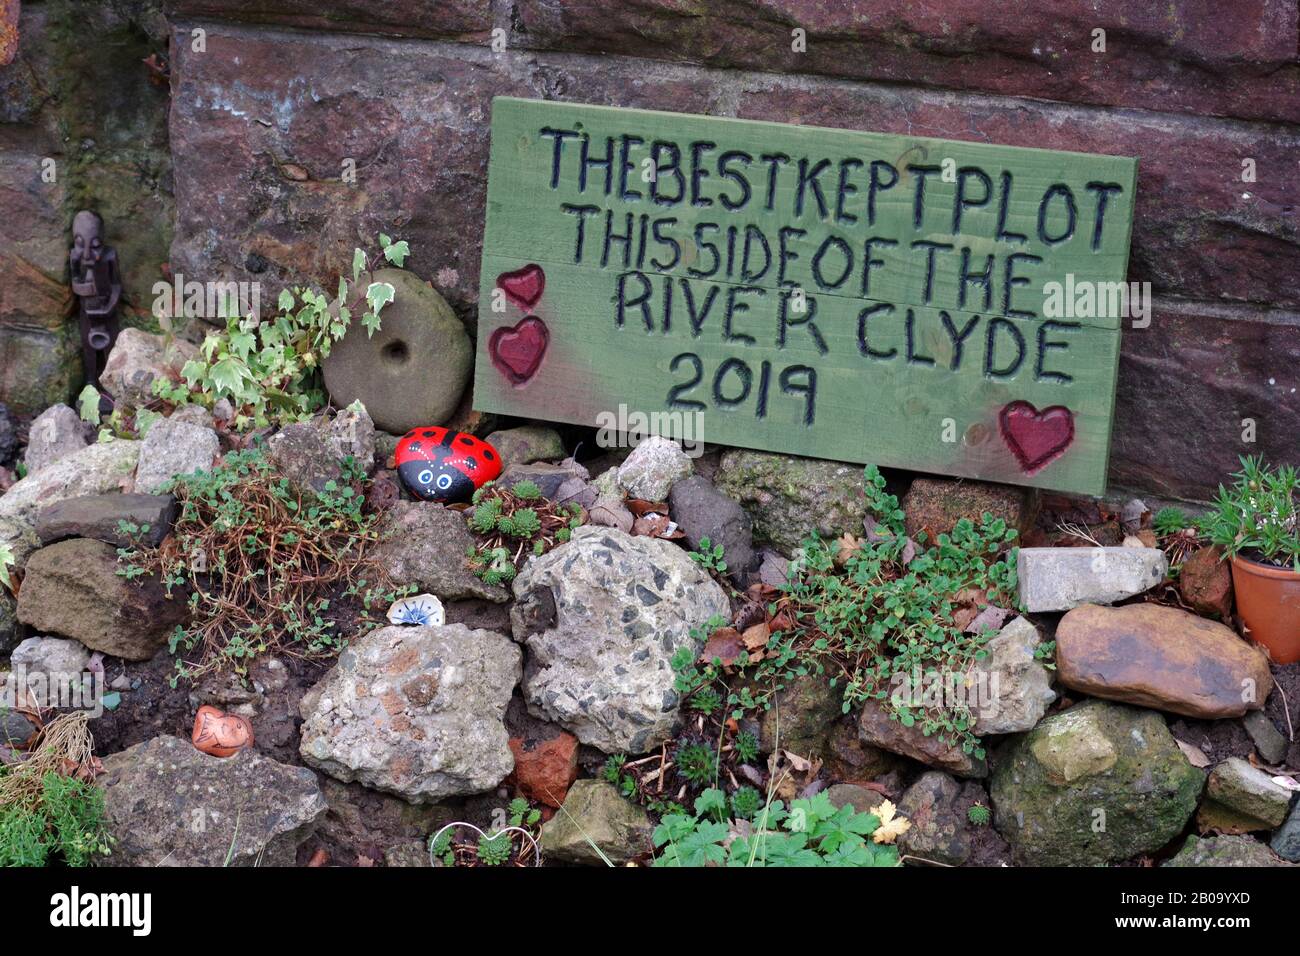 Das Bestgehütete Grundstück Auf Dieser Seite des Flusses Clyde 2019, Yoker, Glasgow Stockfoto